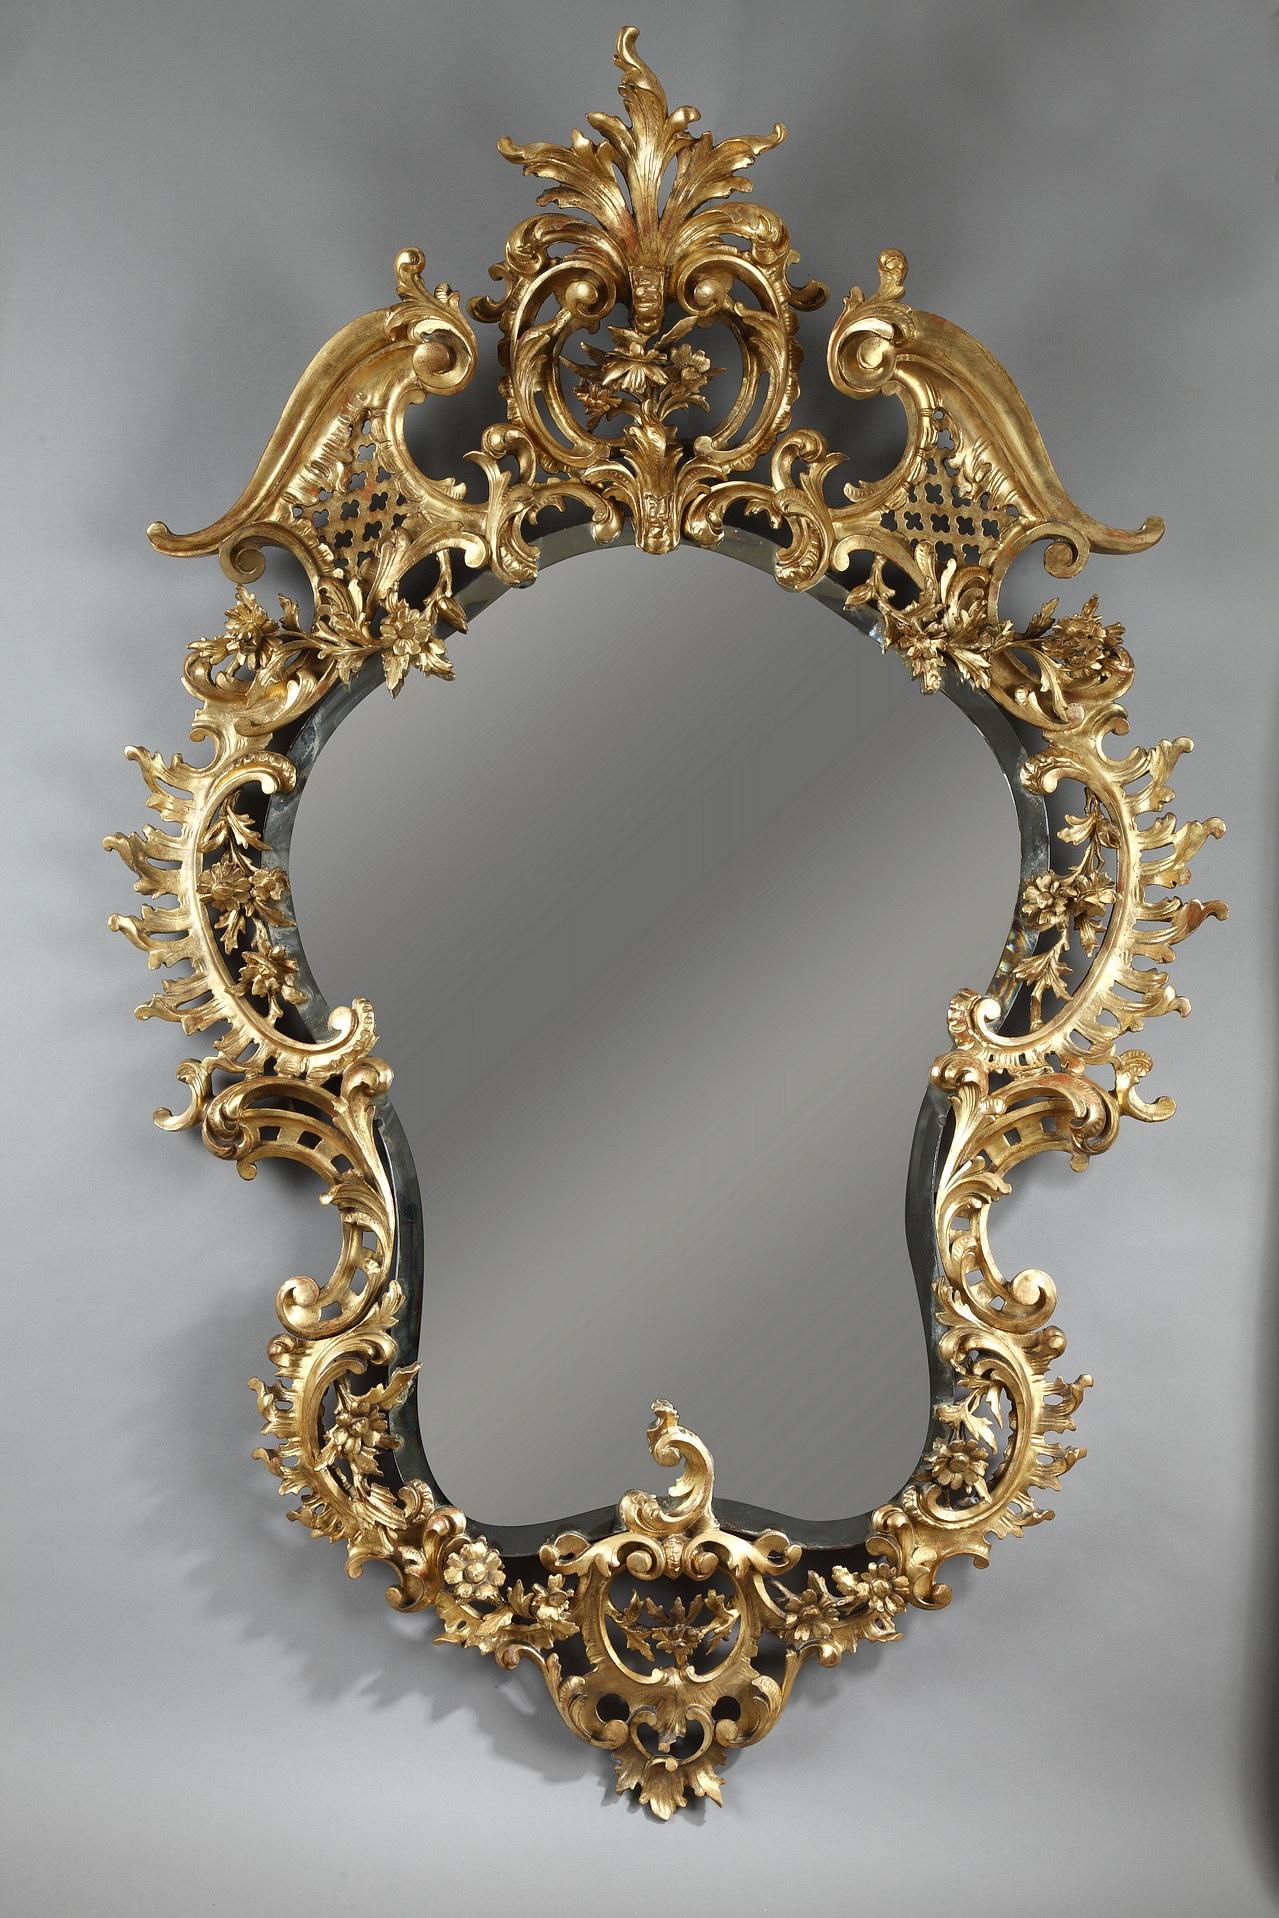 Elégant miroir en bois doré sculpté, de forme incurvée, à riche décor rocaille ajouré de fleurs, volutes et feuilles d'acanthe.